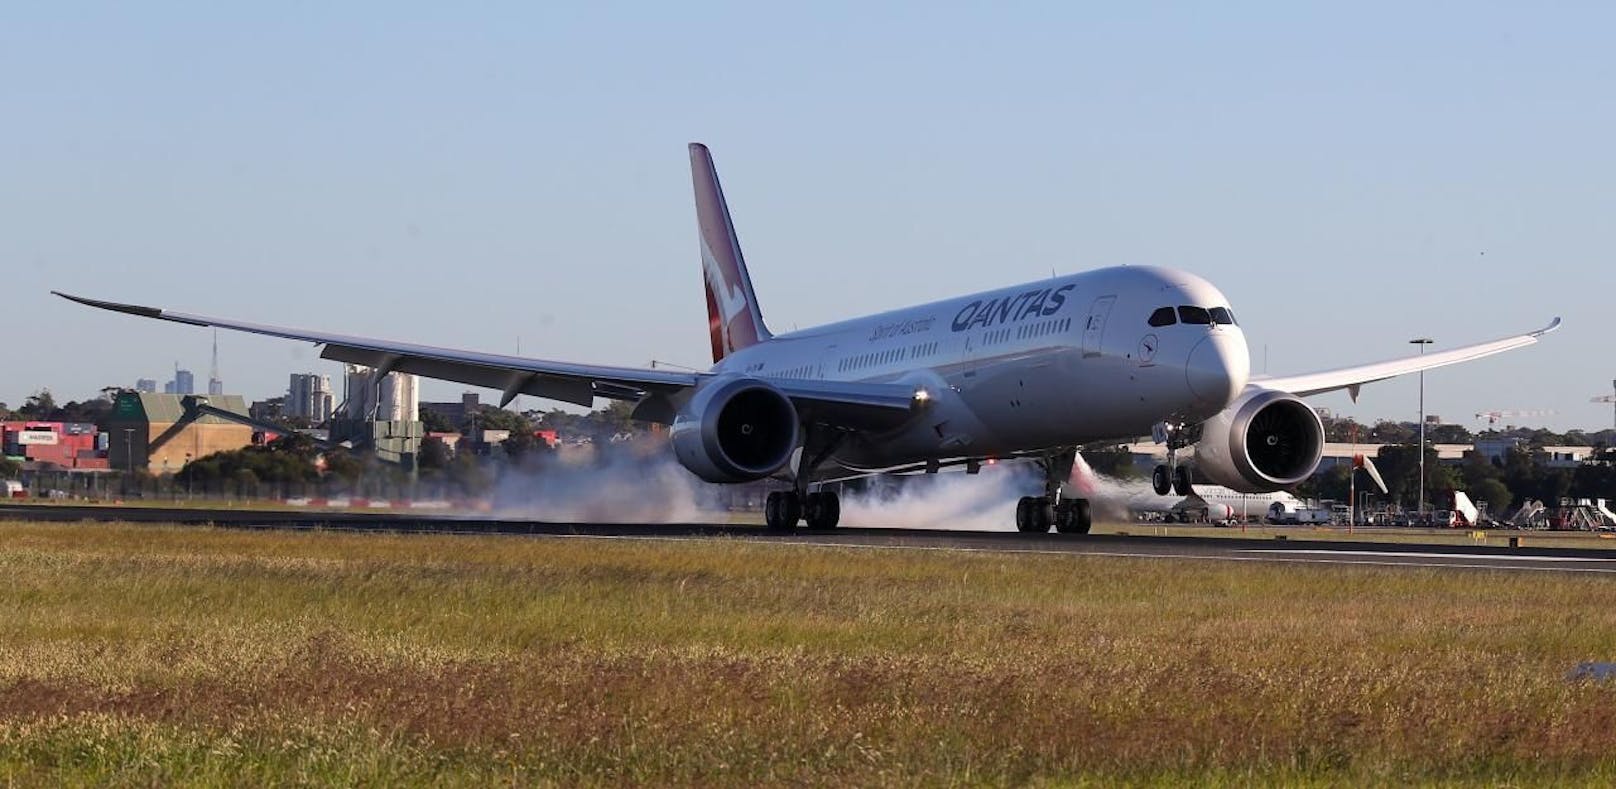 Australiens Fluggesellschaft Qantas hat den bisher längsten Passagierflug absolviert.